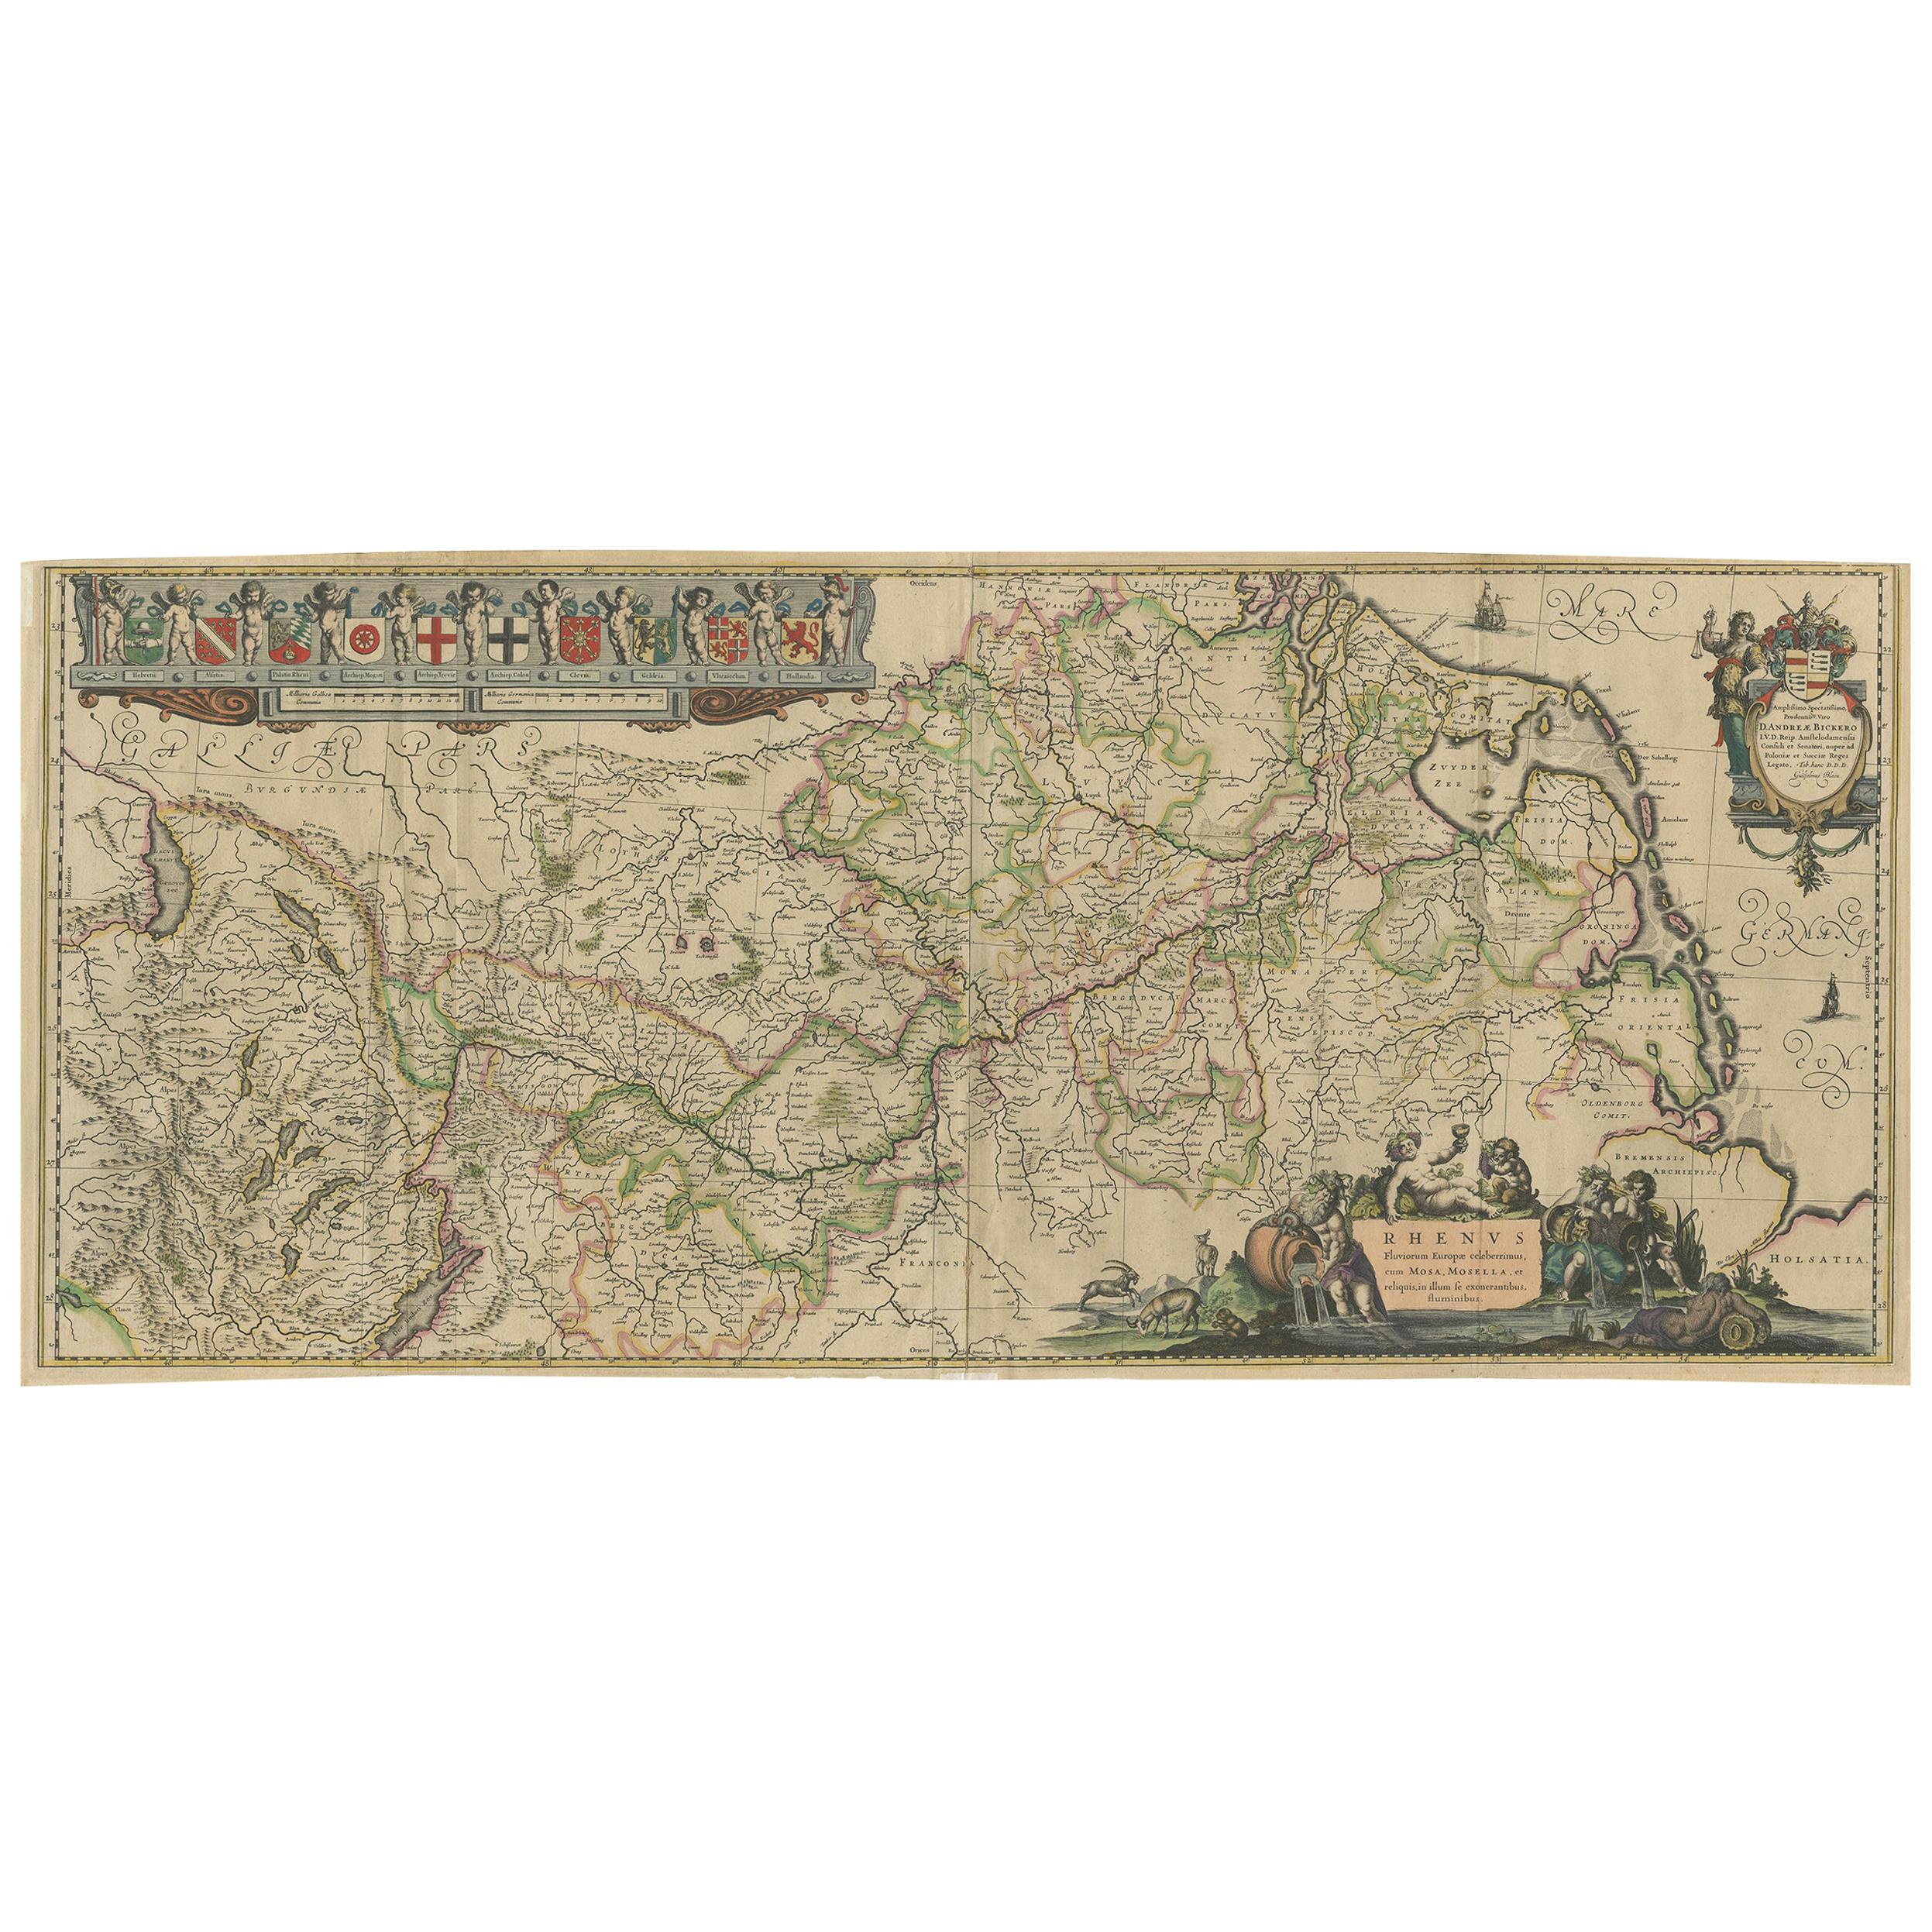 Carte ancienne du cours du Rhin par Blaeu, datant d'environ 1640